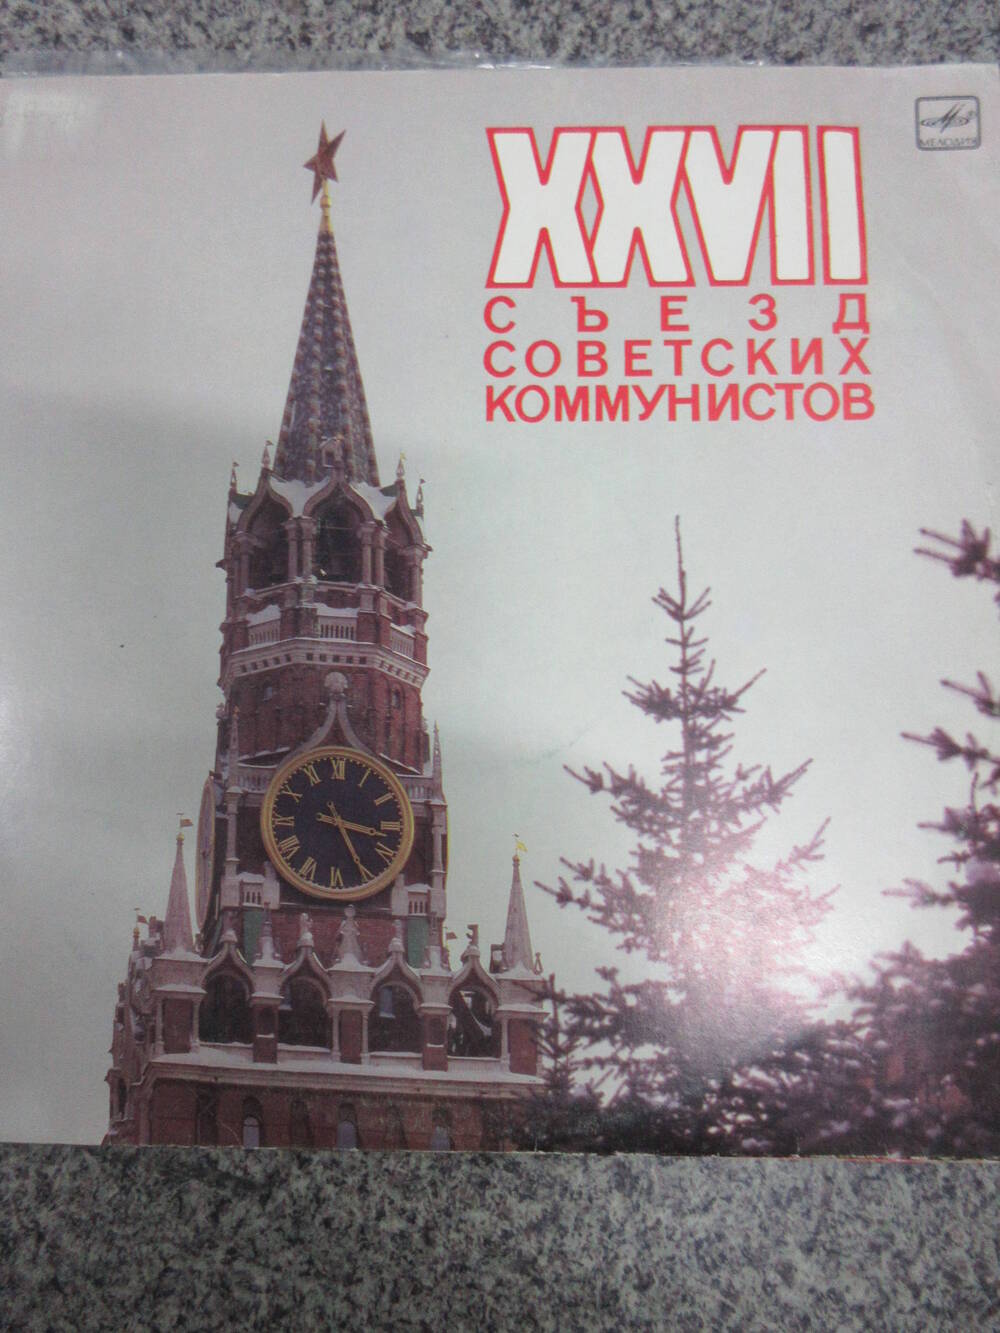 Пластинка XXVII съезд советских коммунистов часть 1 (в пакете 1980-х годов)